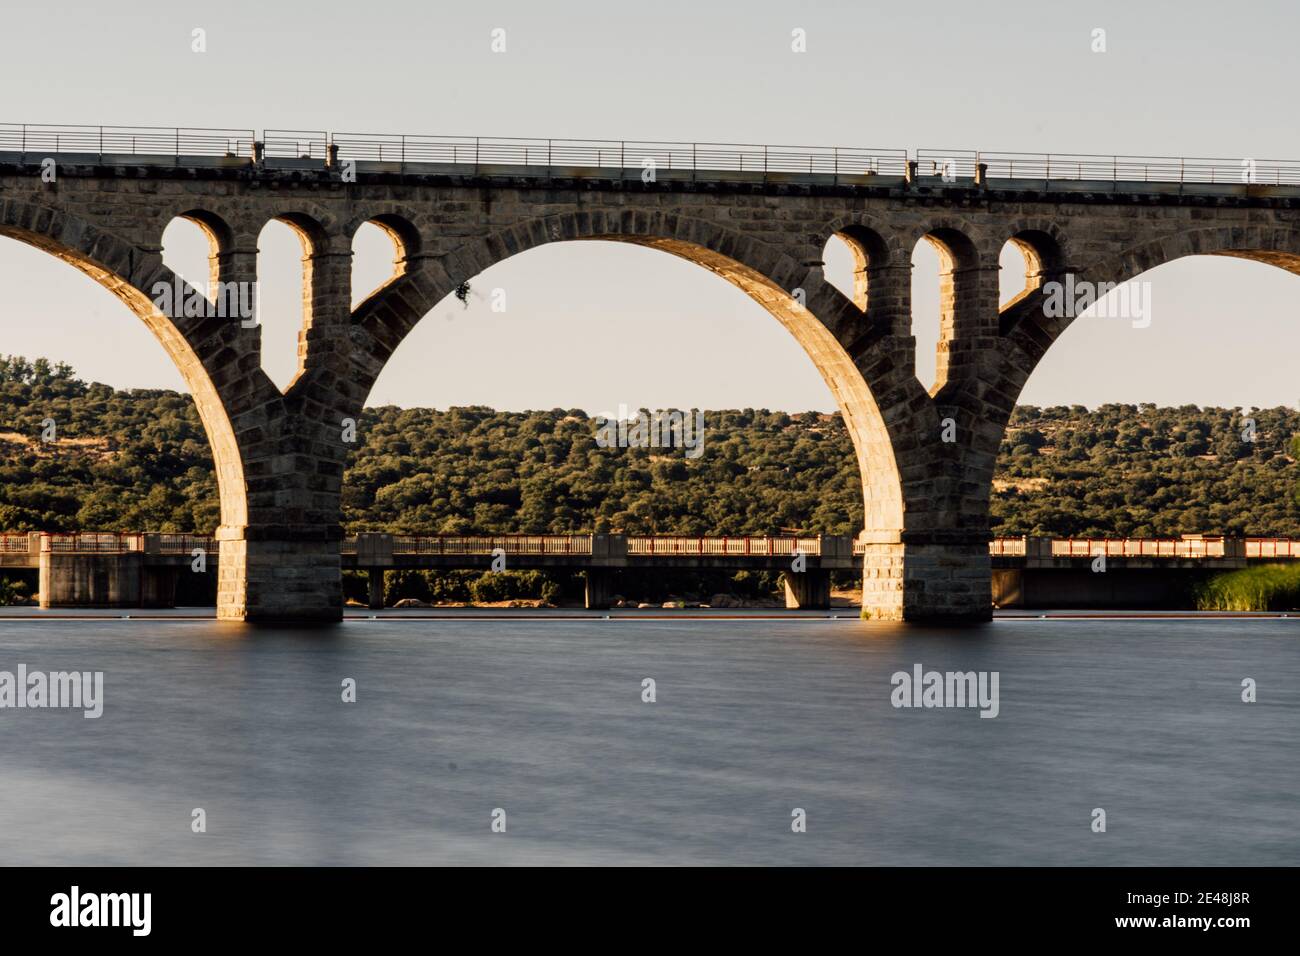 Closeup shot of the Rail Bridge over Adaja river, in Avila, Castile, Spain Stock Photo